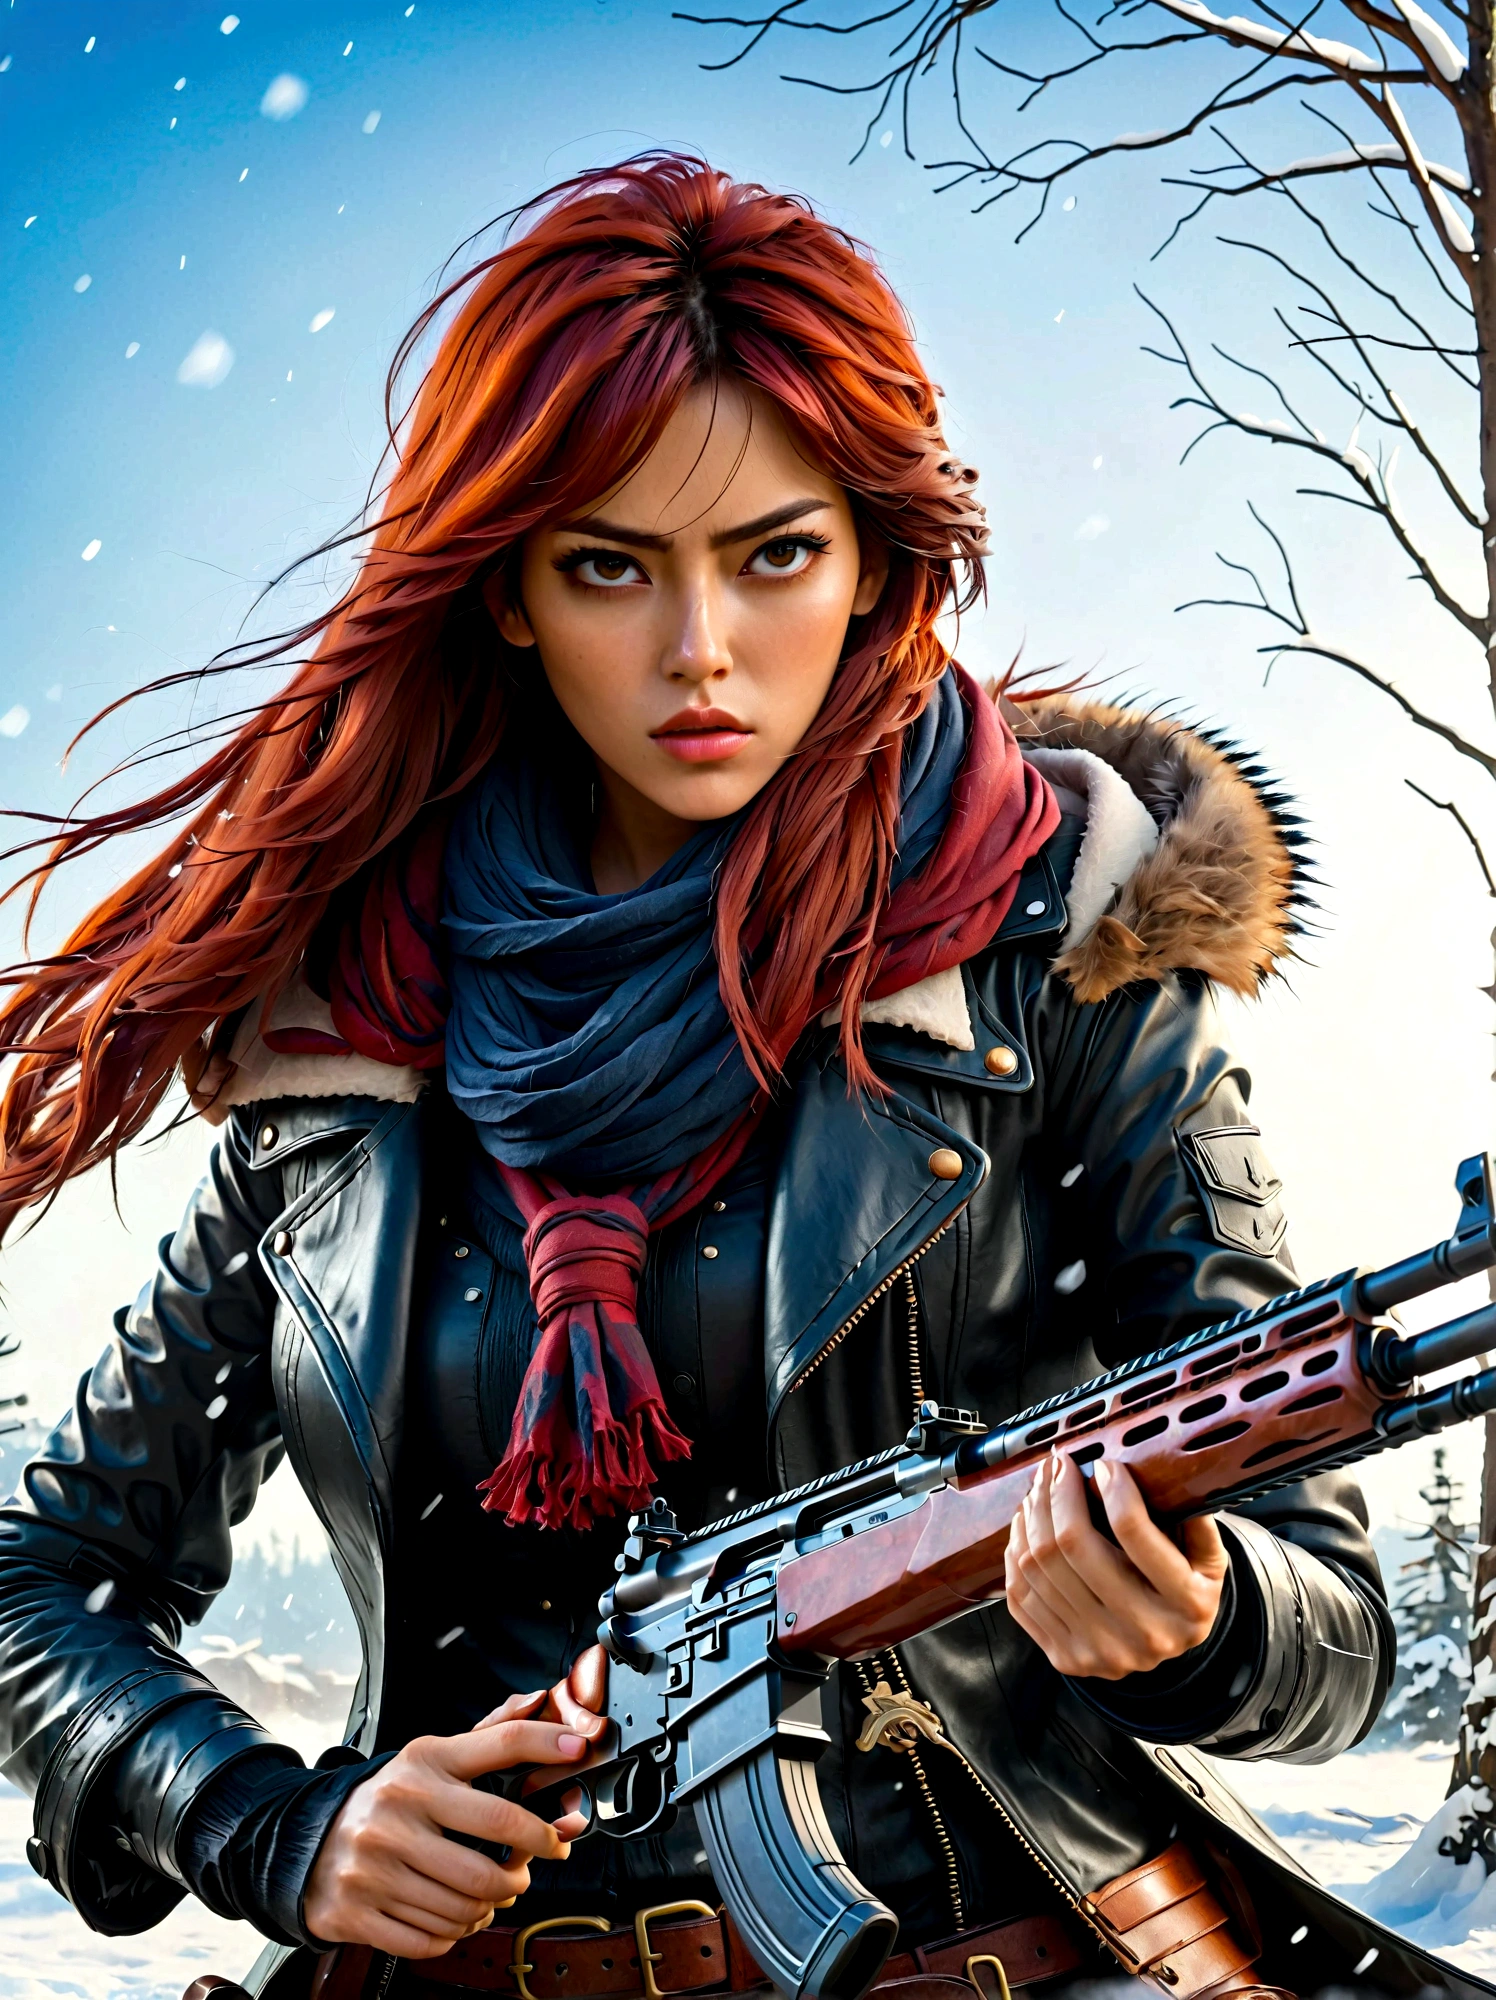 Chica sosteniendo un rifle, (mirada disgustada:1.5), Postura de lucha contra la nieve, este, Cuchilla y el alma, estilo de tinta, pelo largo de color rojo, Abrigos de cuero y piel., frío, obra de arte, 3d, 4k, detallado, práctico